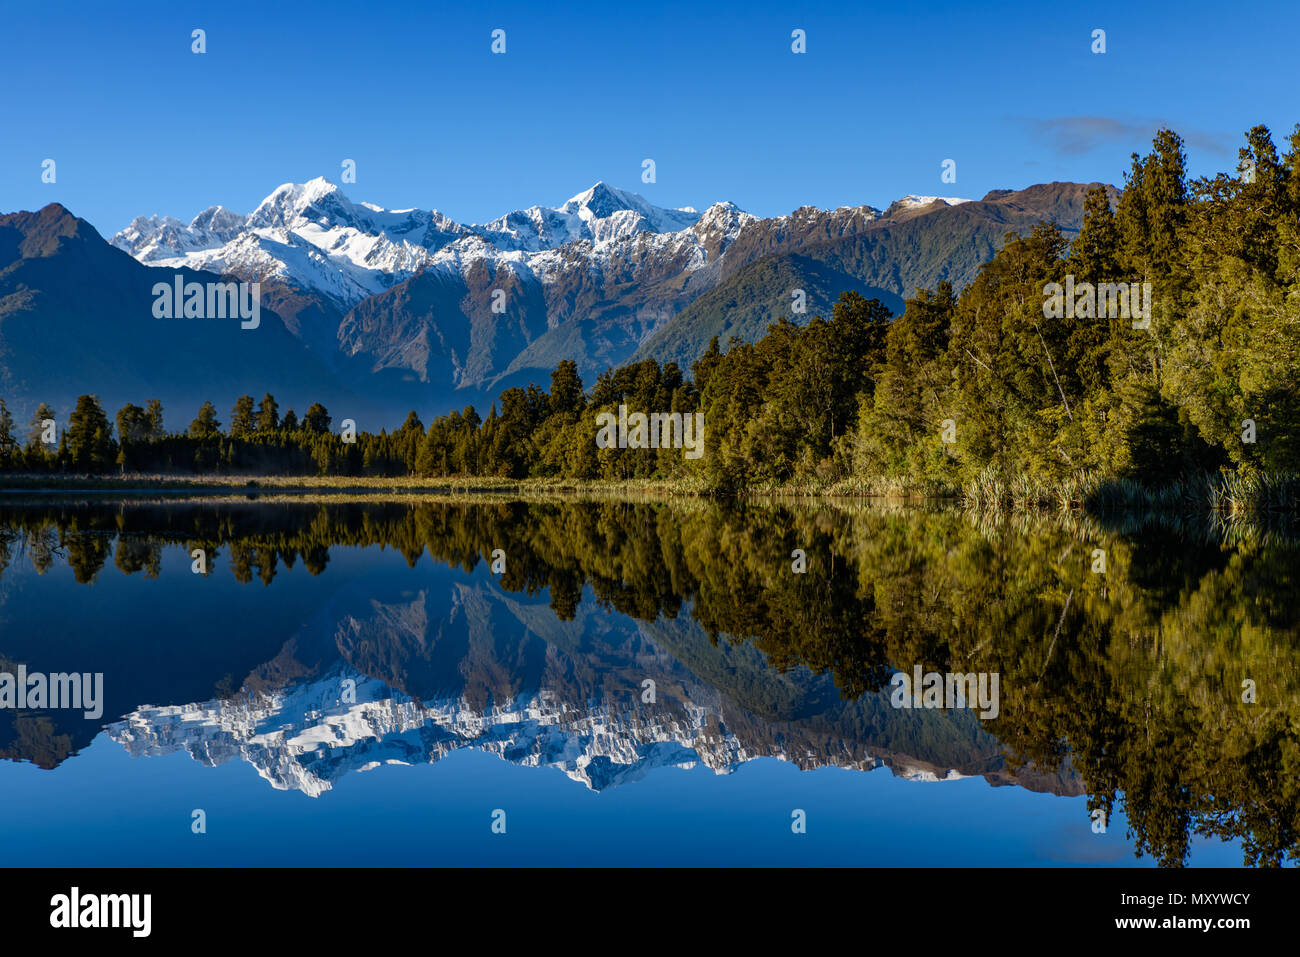 Lake Matheson avec réflexions sur l'eau, côte ouest, Nouvelle-Zélande Banque D'Images